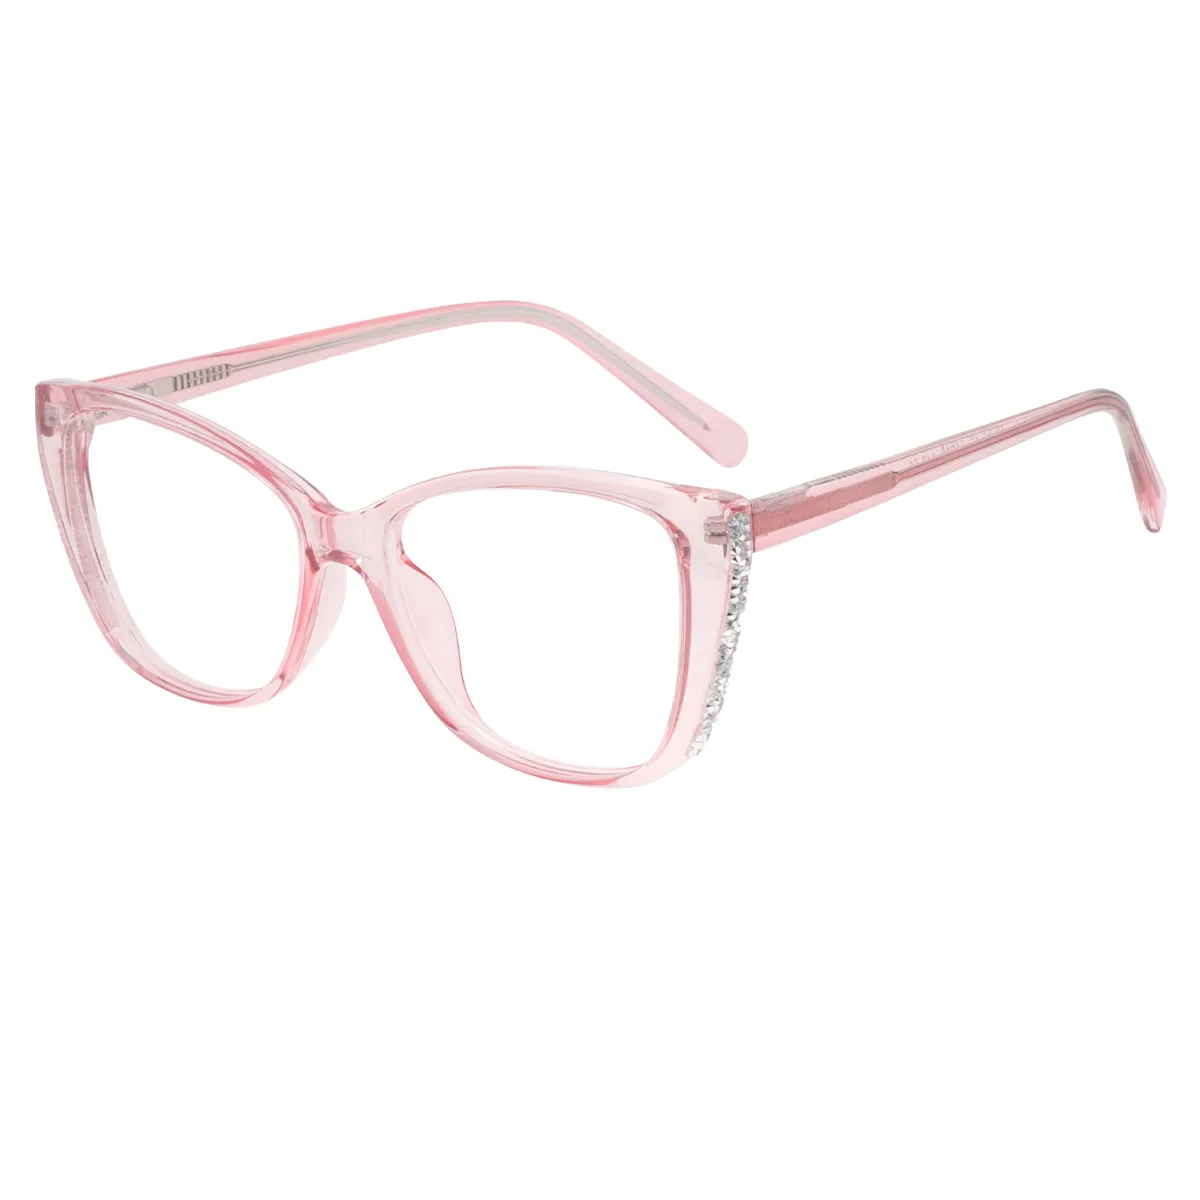 Georgia - Cat-eye  Glasses for Women